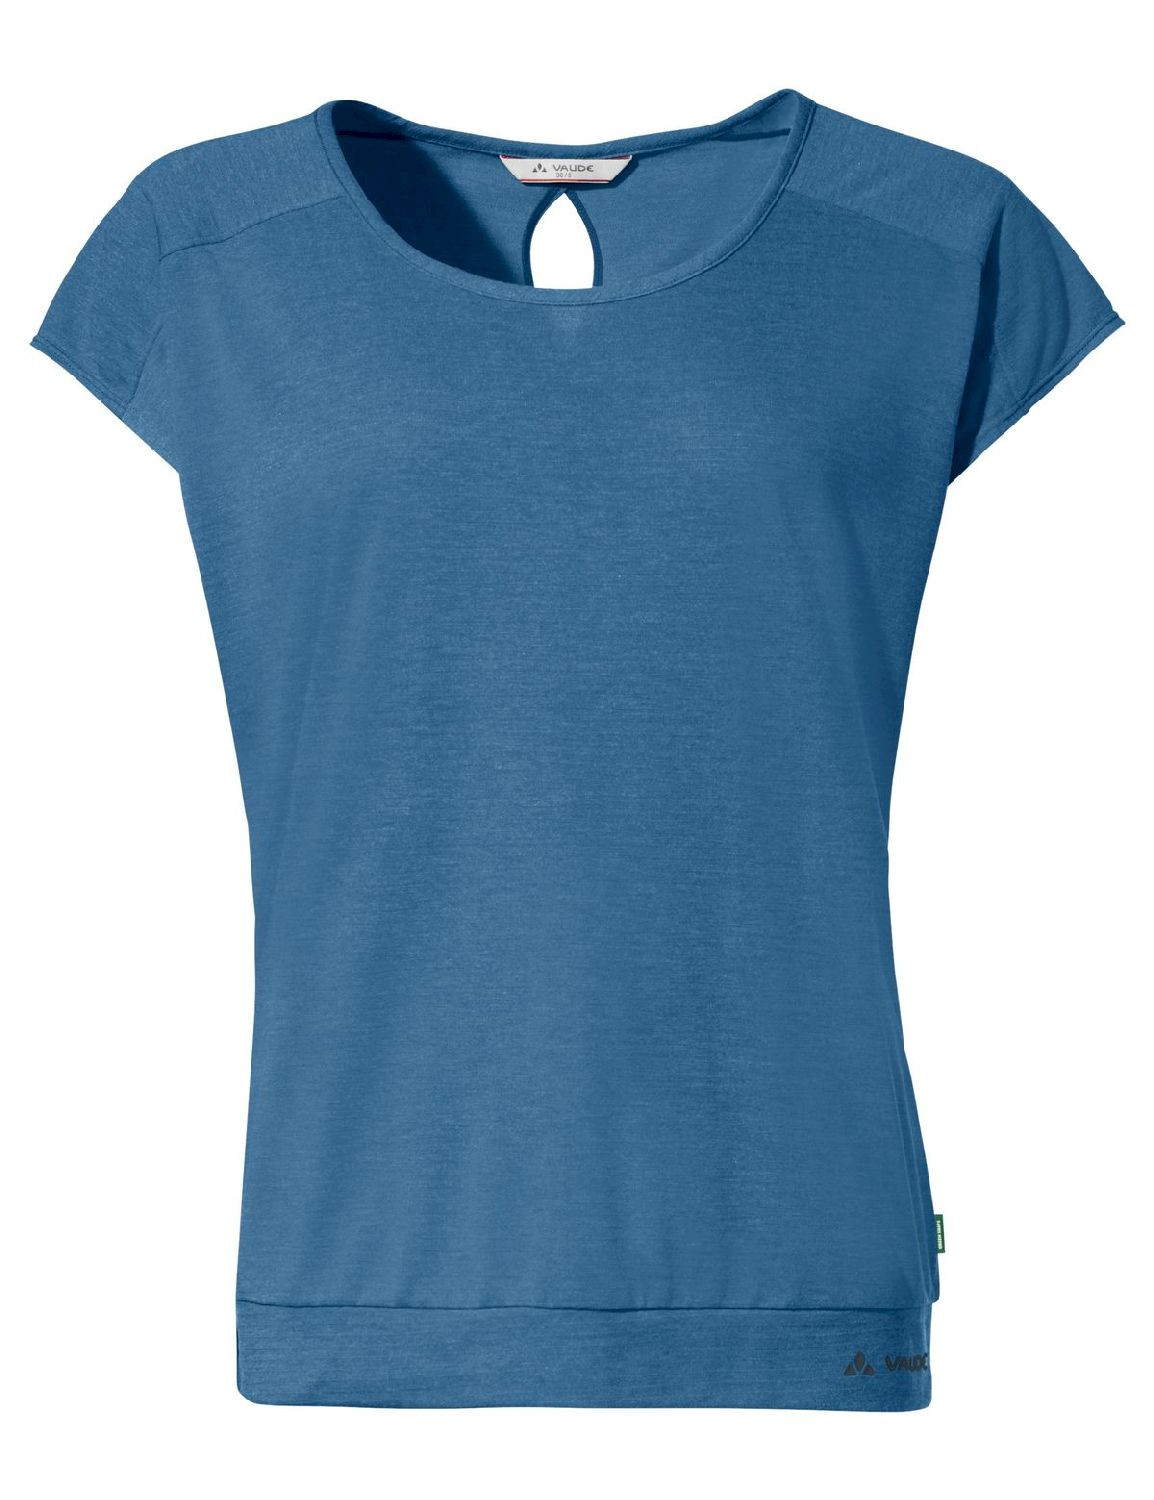 Vaude Skomer T-Shirt III - T-shirt femme